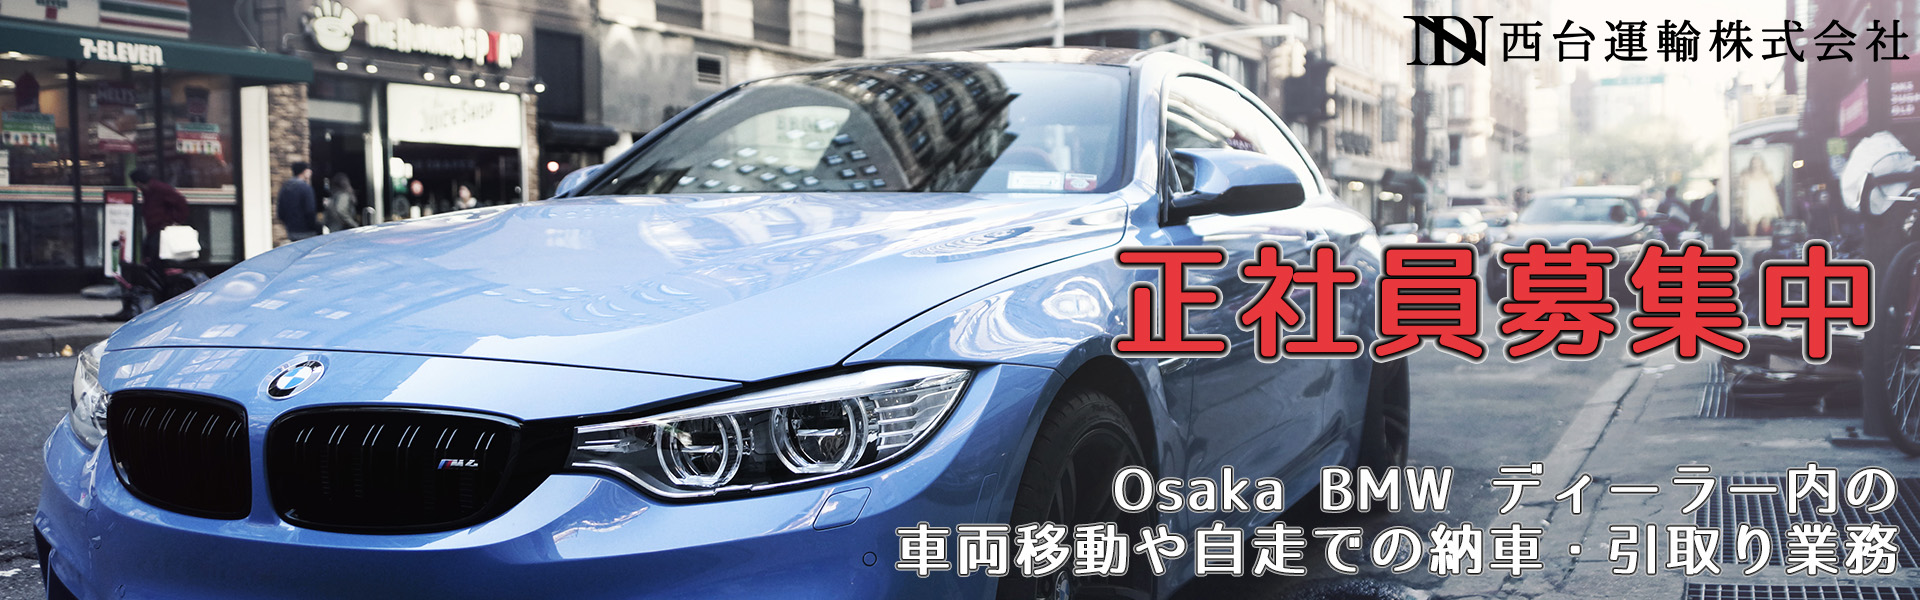 正社員募集中 Osaka BMW ディーラー内の車両移動や自走での納車・引取り業務